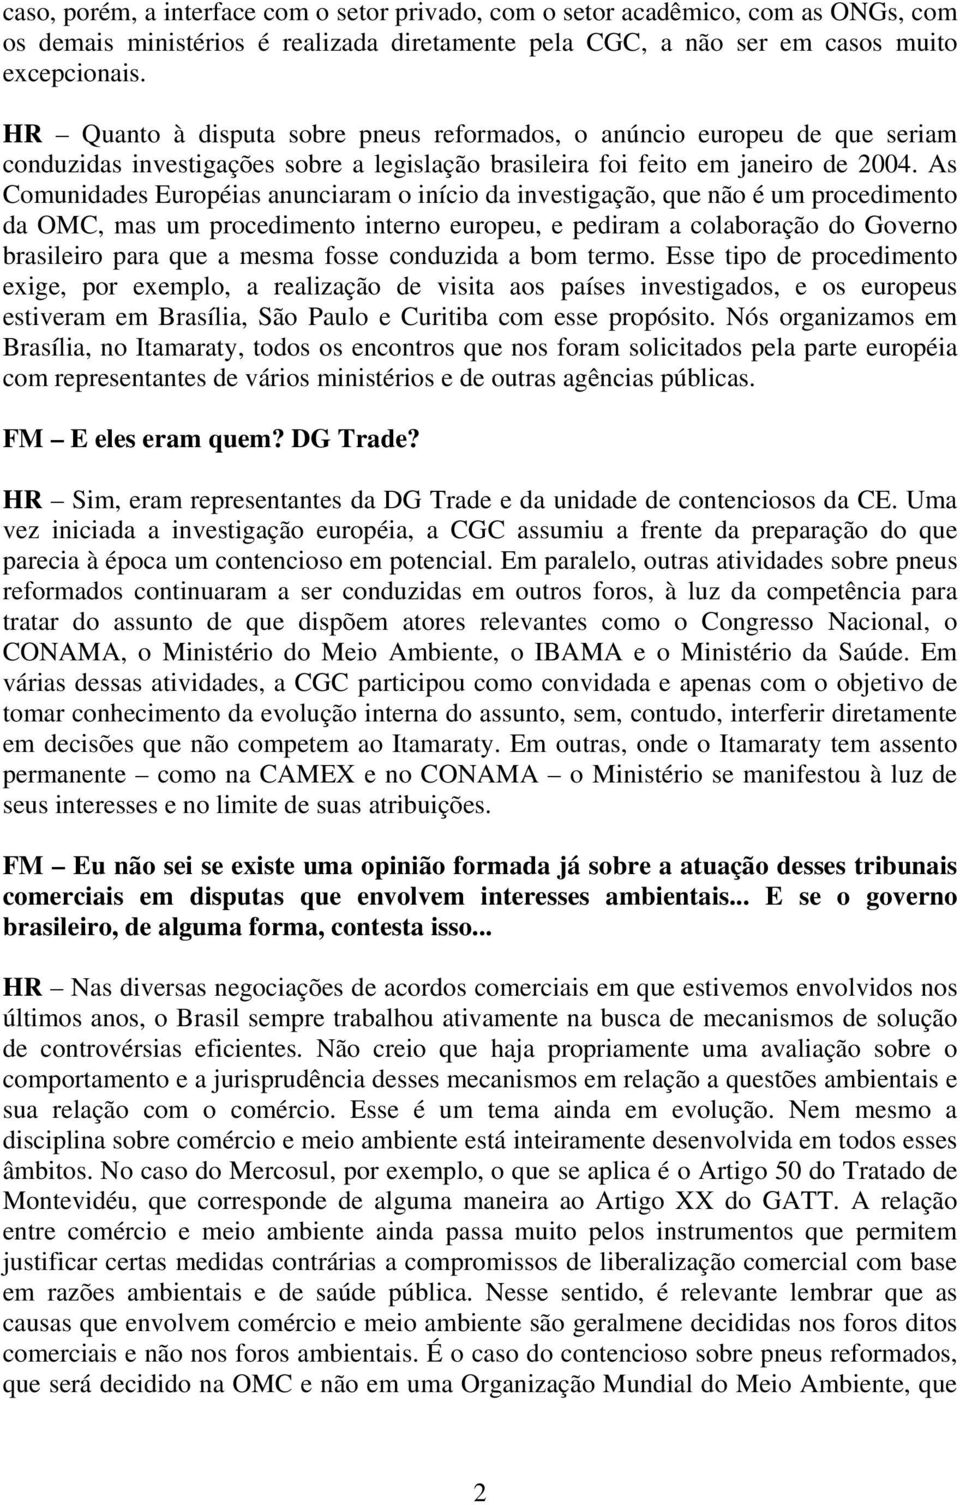 As Comunidades Européias anunciaram o início da investigação, que não é um procedimento da OMC, mas um procedimento interno europeu, e pediram a colaboração do Governo brasileiro para que a mesma